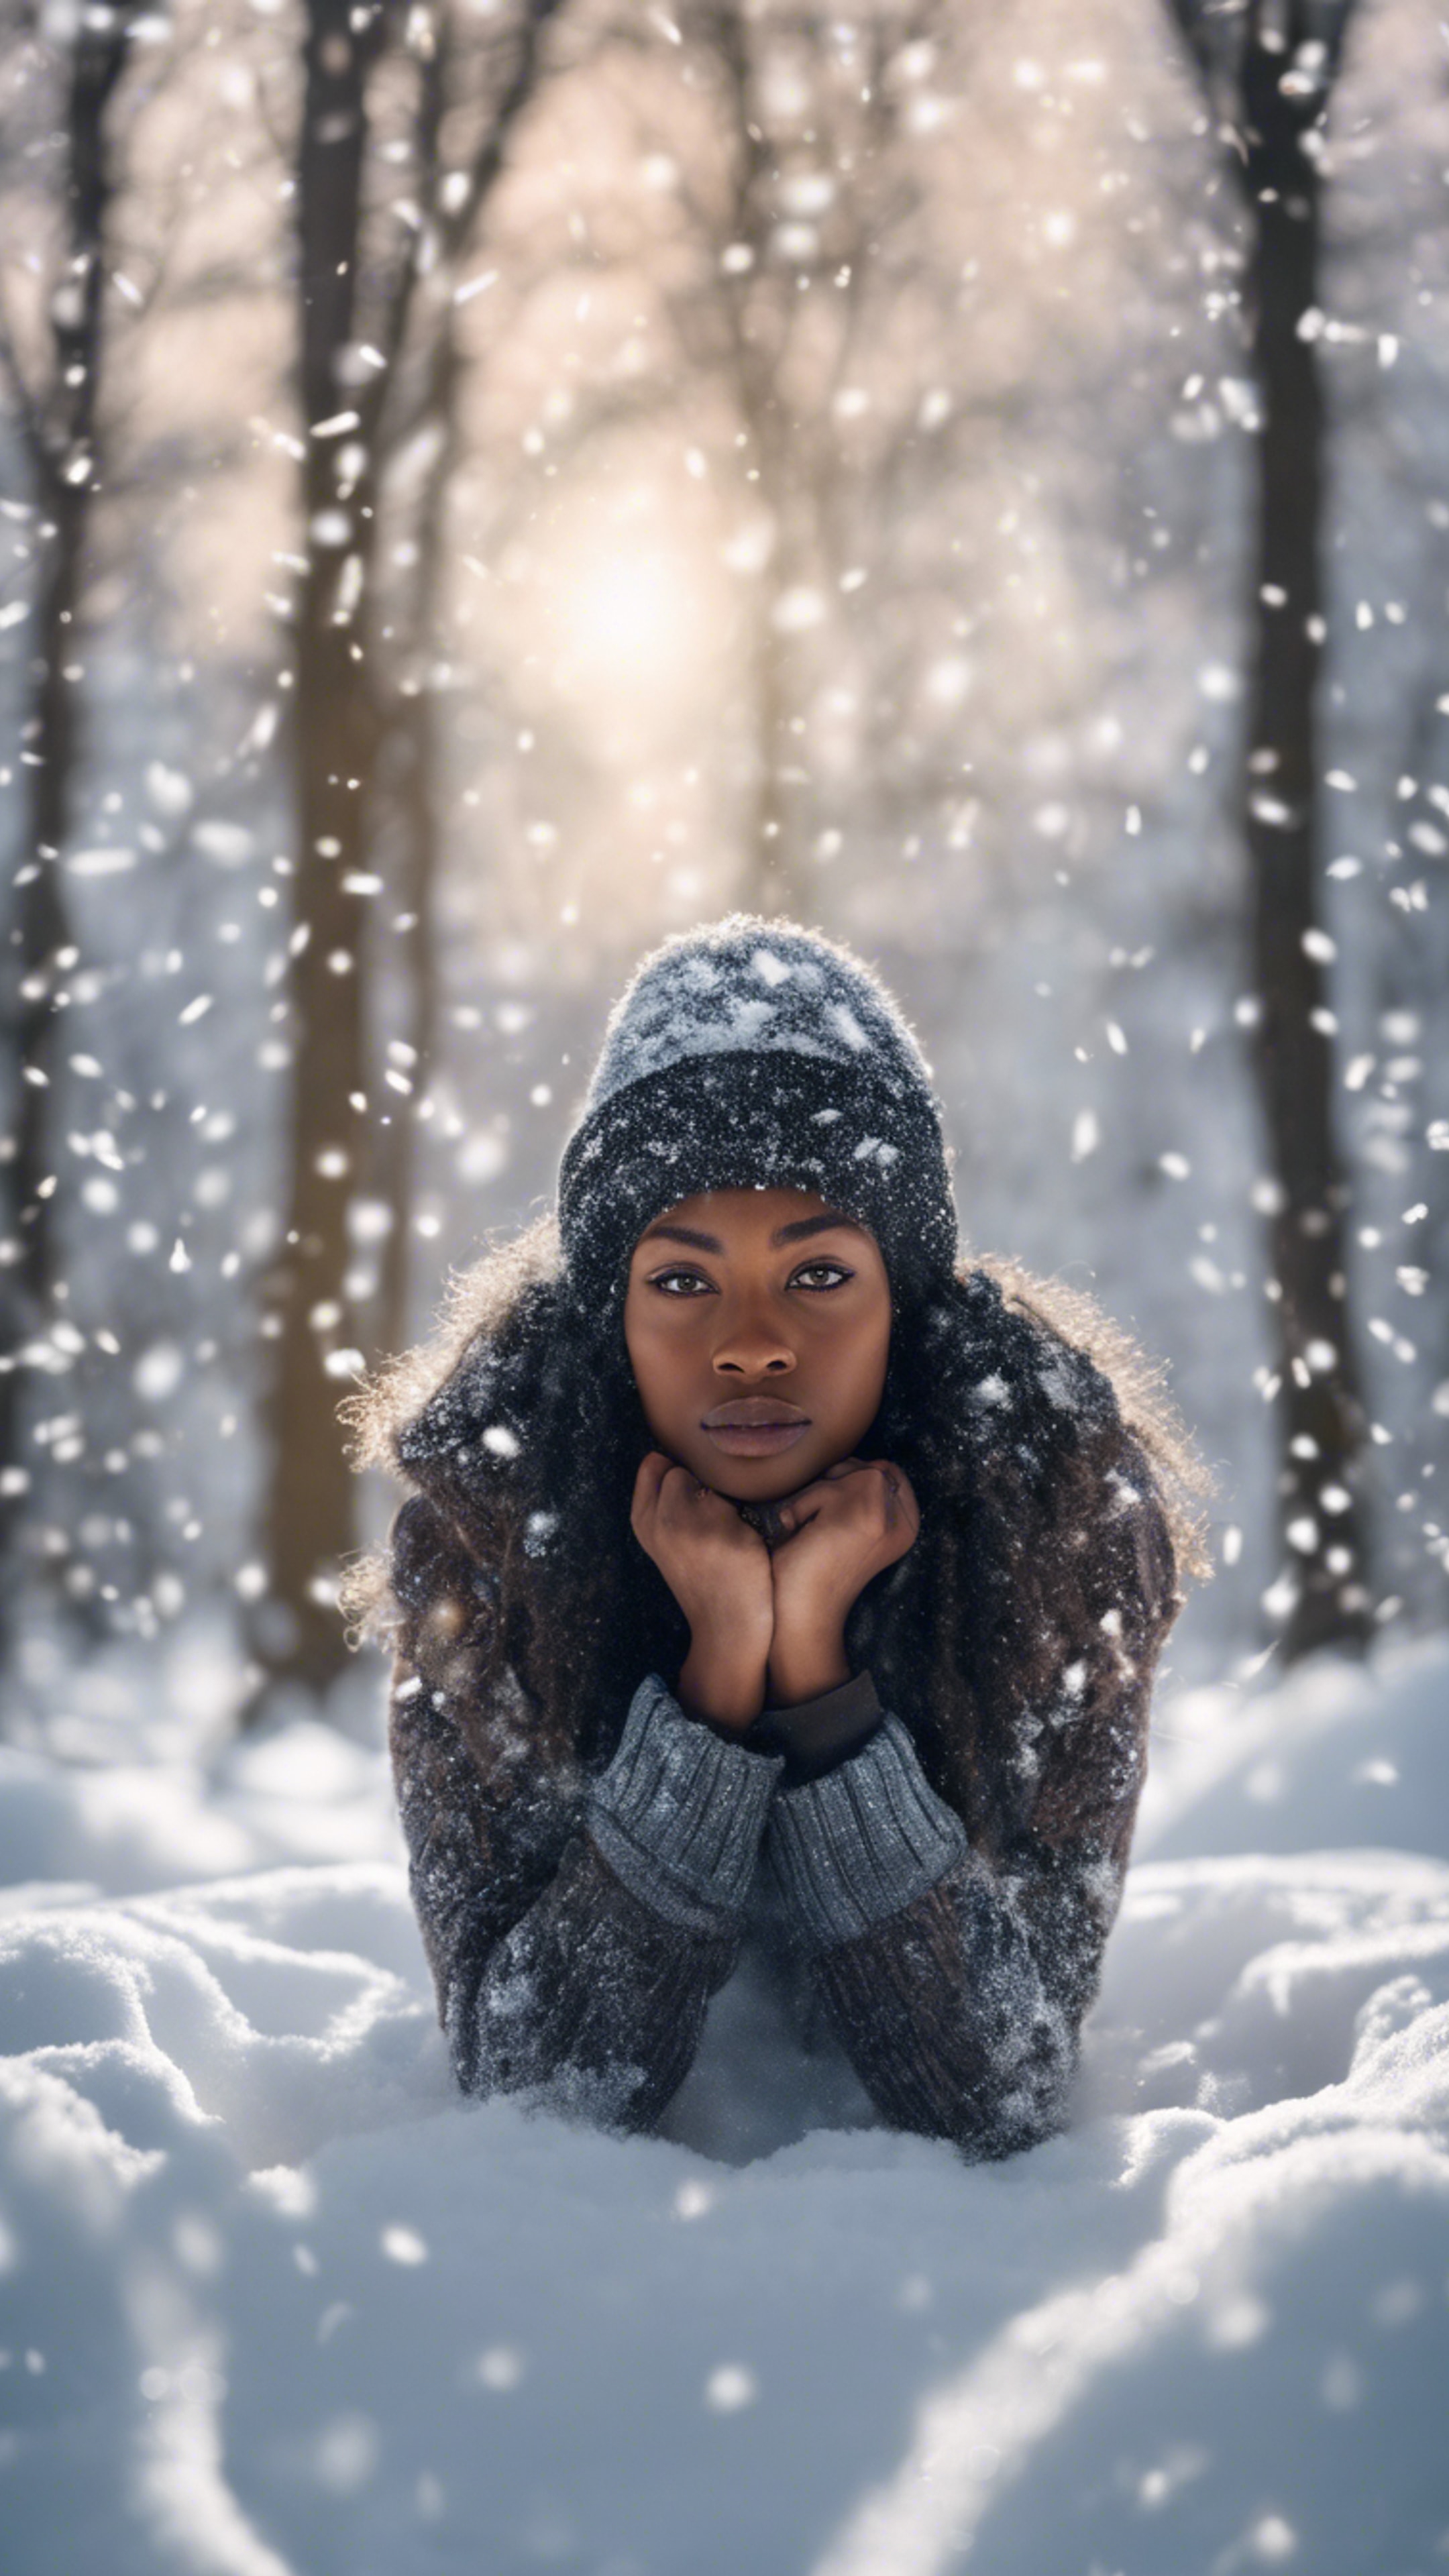 A black girl in a winter scene making a snow angel. Wallpaper[fcbe3ea2579748289c20]